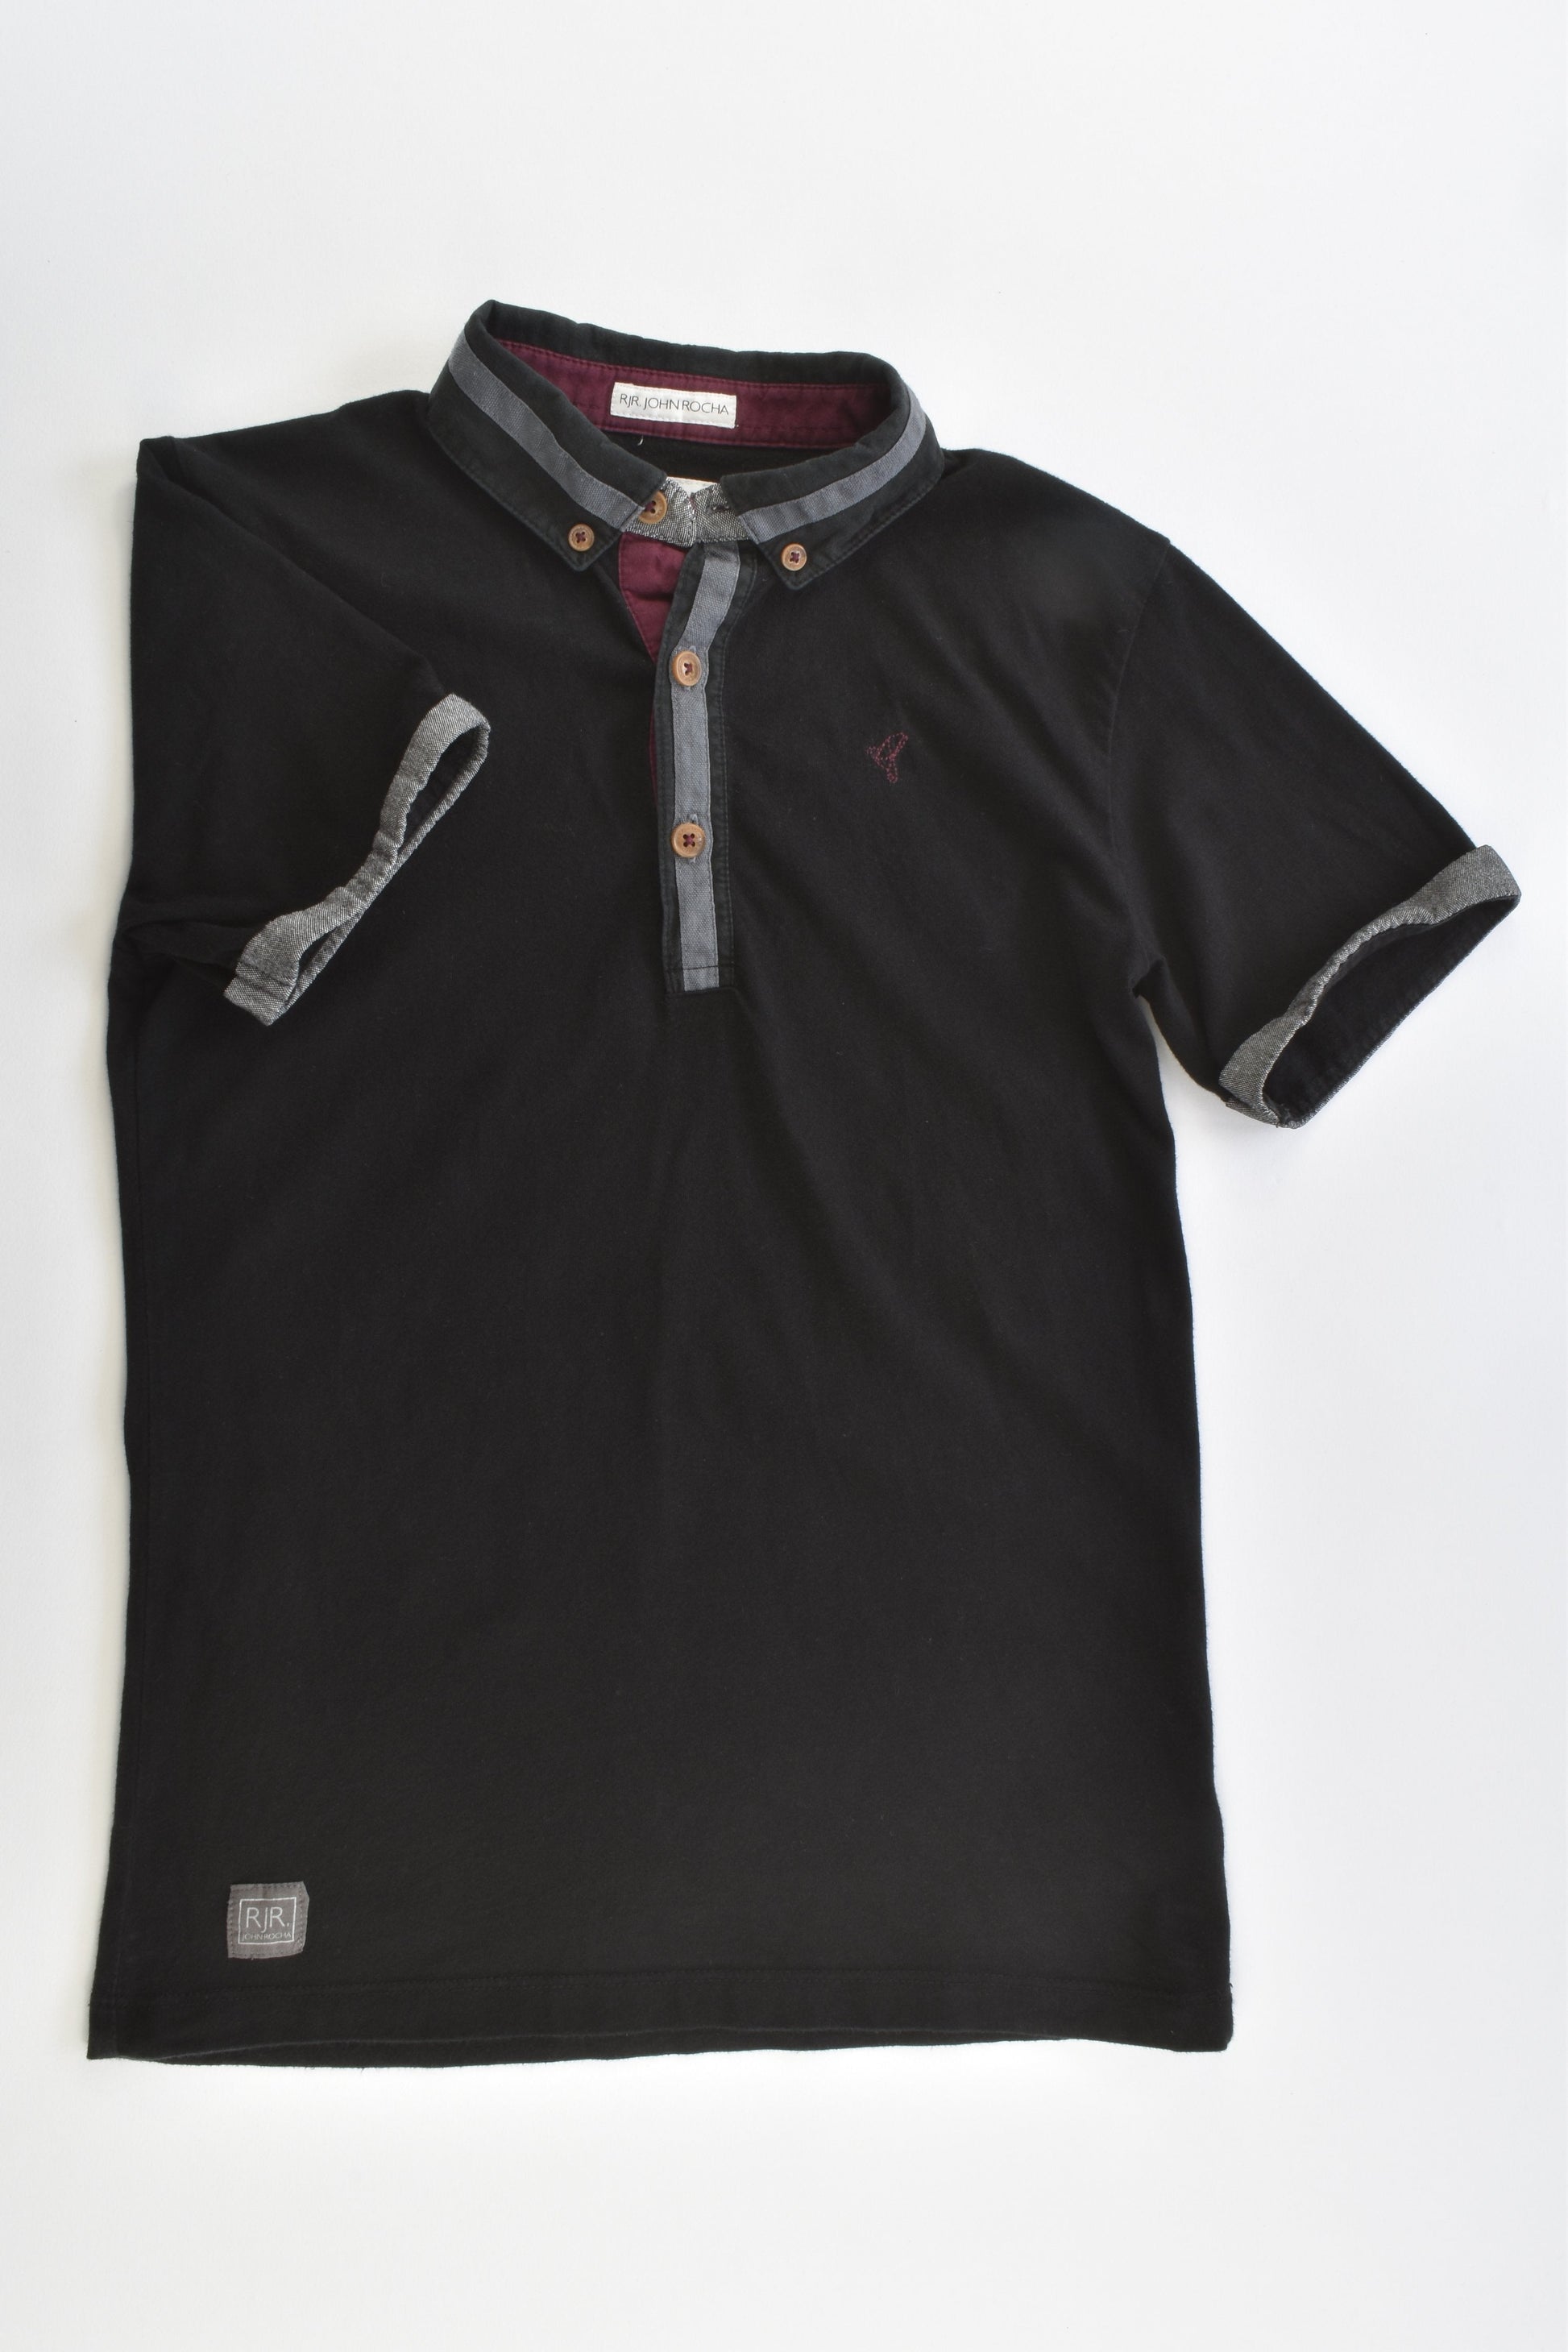 RJR. John Rocha Size 9-10 (140 cm) Collared T-shirt